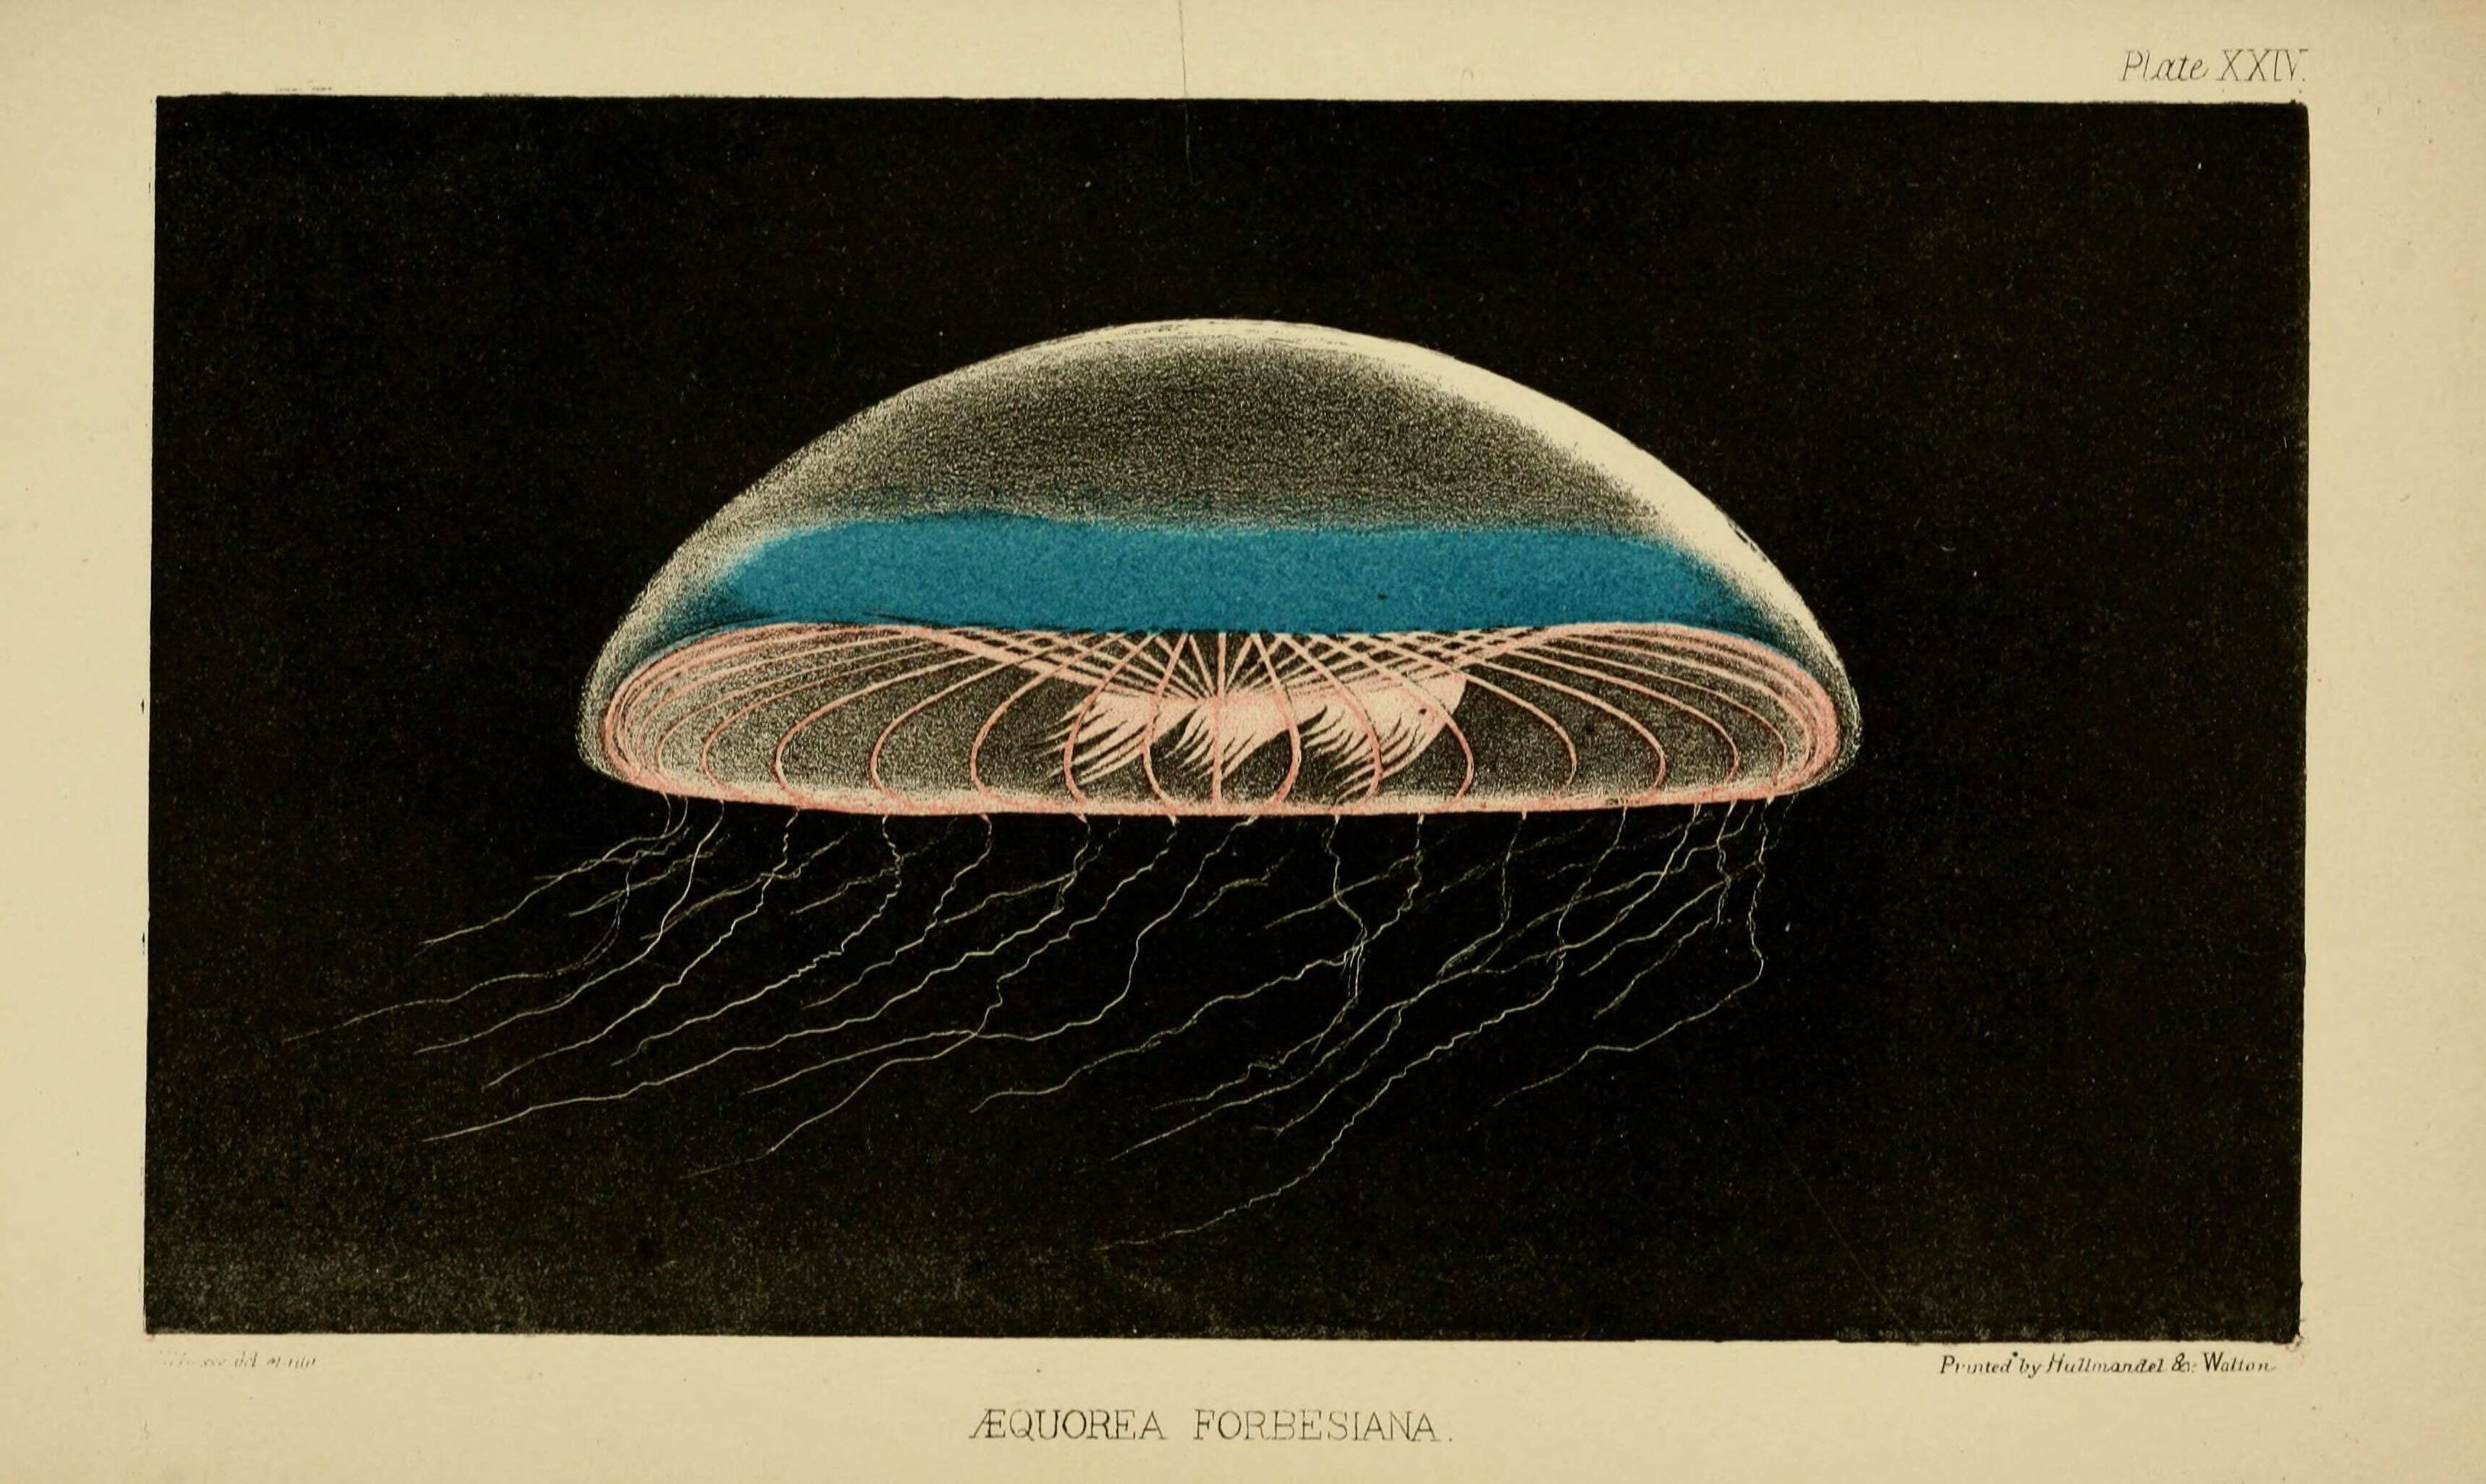 Imagem de Aequorea forskalea Péron & Lesueur 1810